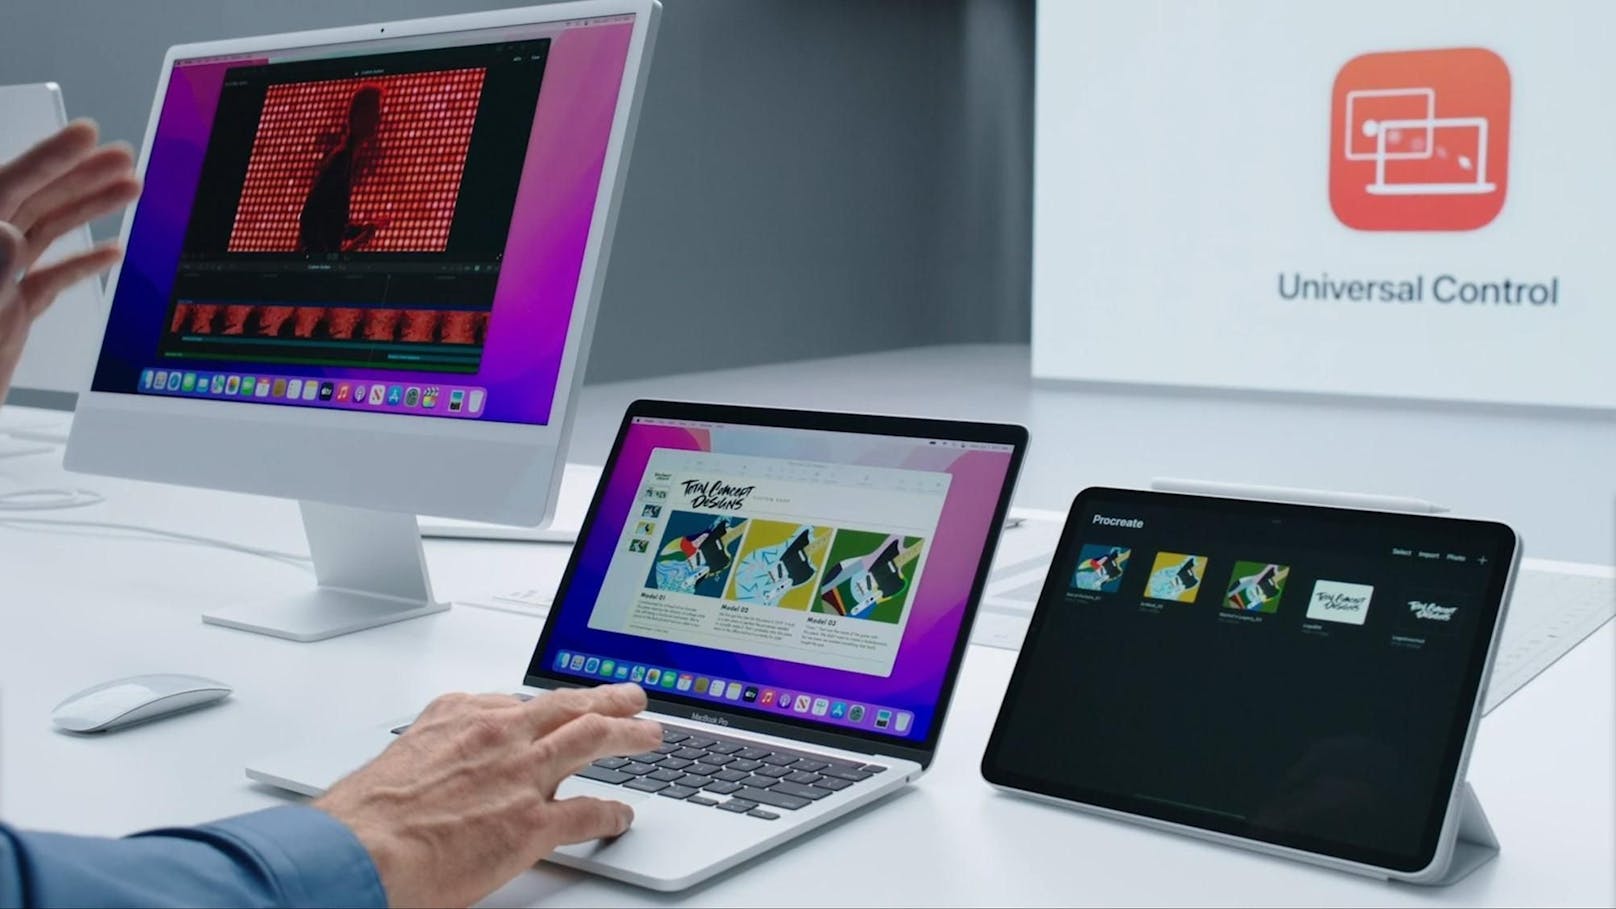 Mit der&nbsp;Funktion Universal Control können Maus und Tastatur künftig vom Macbook auch auf dem iPad genutzt werden.